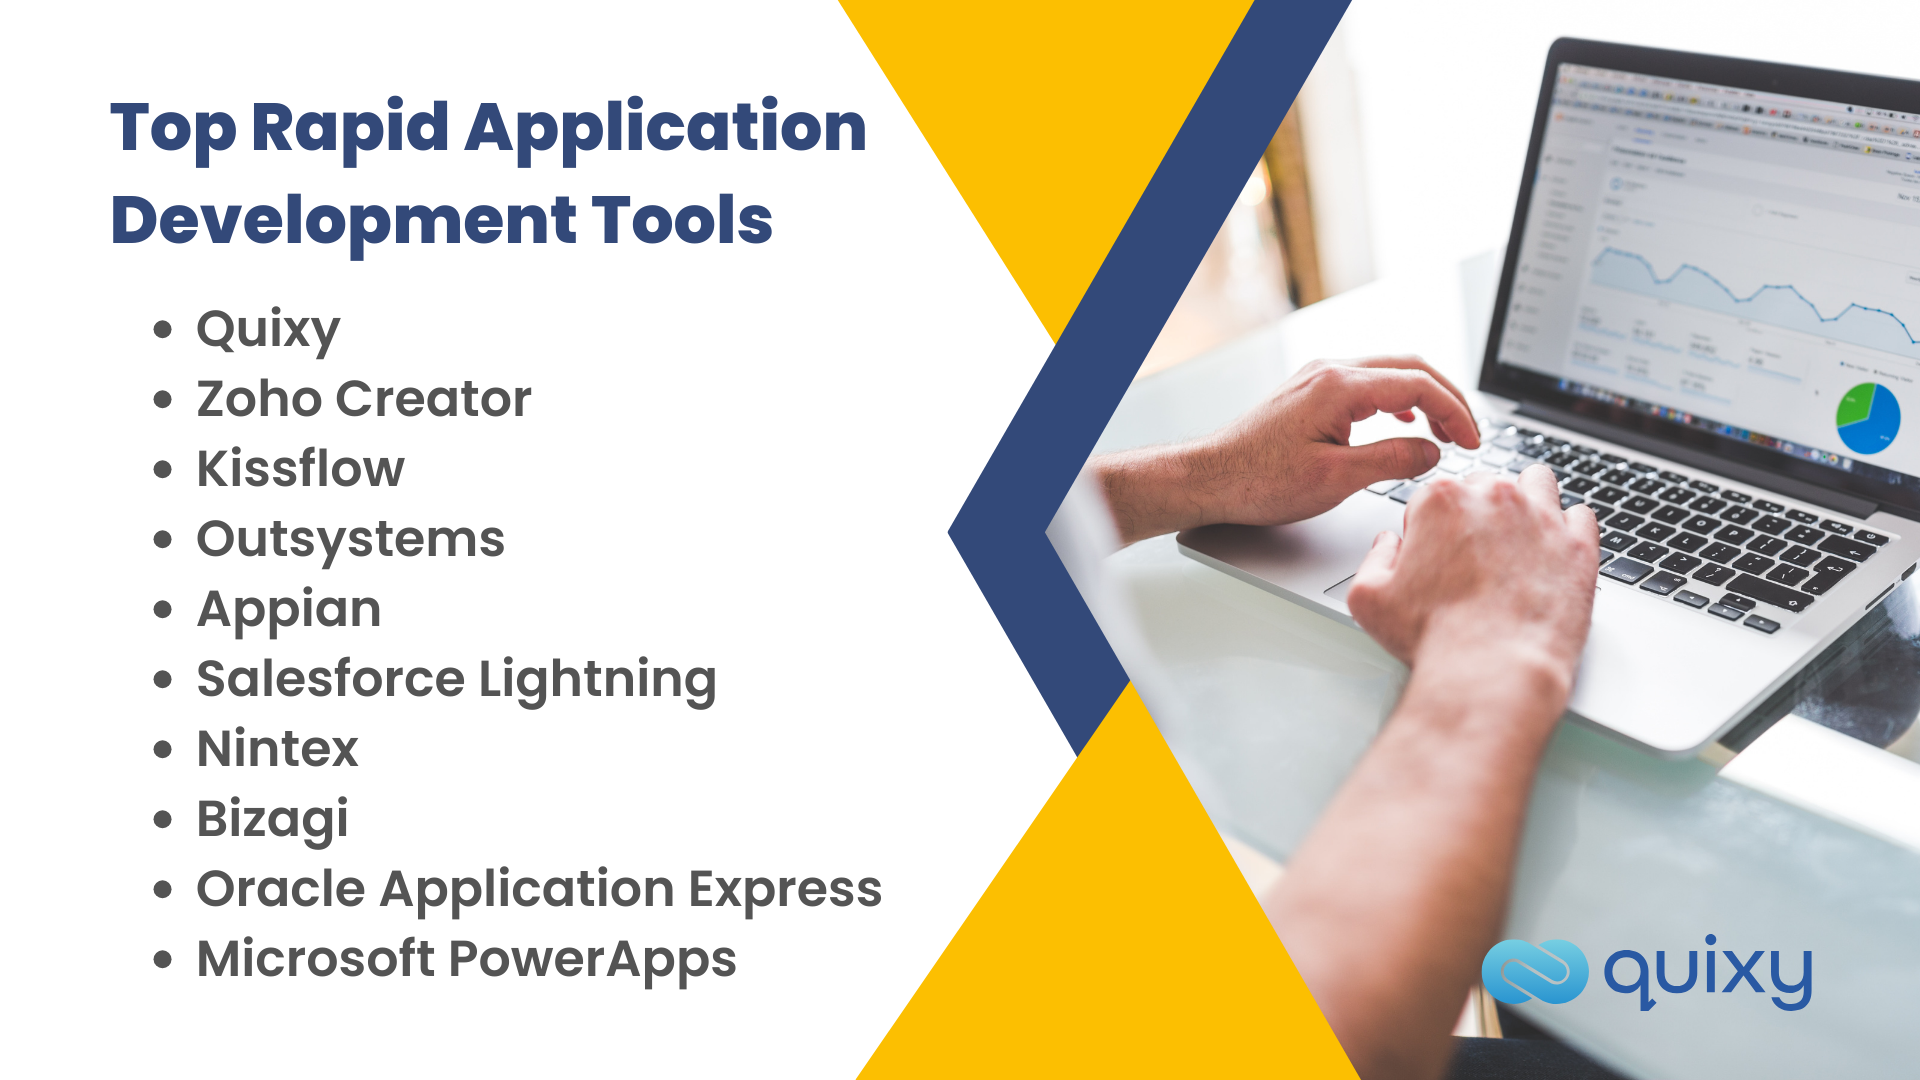 Top Rapid Application Development Tools